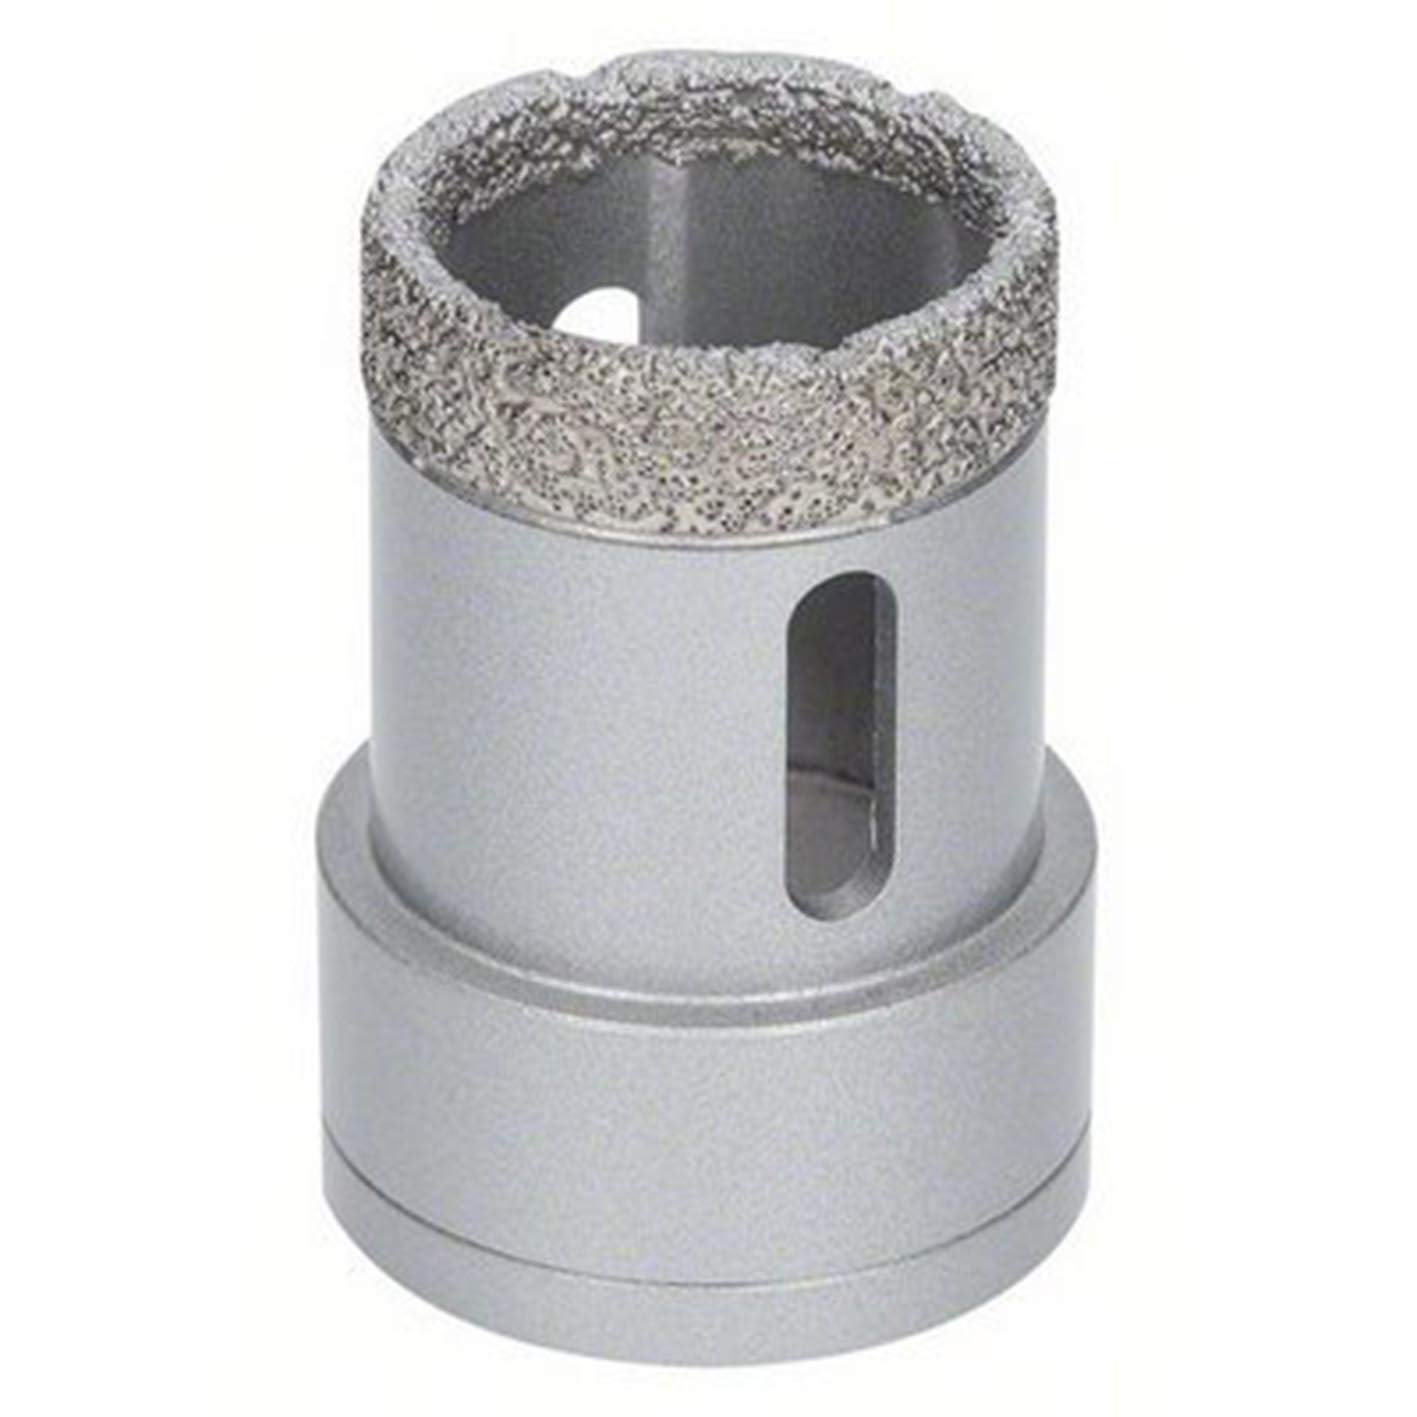 Bosch Accessories 1x Diamanttrockenbohrer Best (für Keramik, X-LOCK, Dry Speed, Ø 35 mm, Arbeitslänge 35 mm)